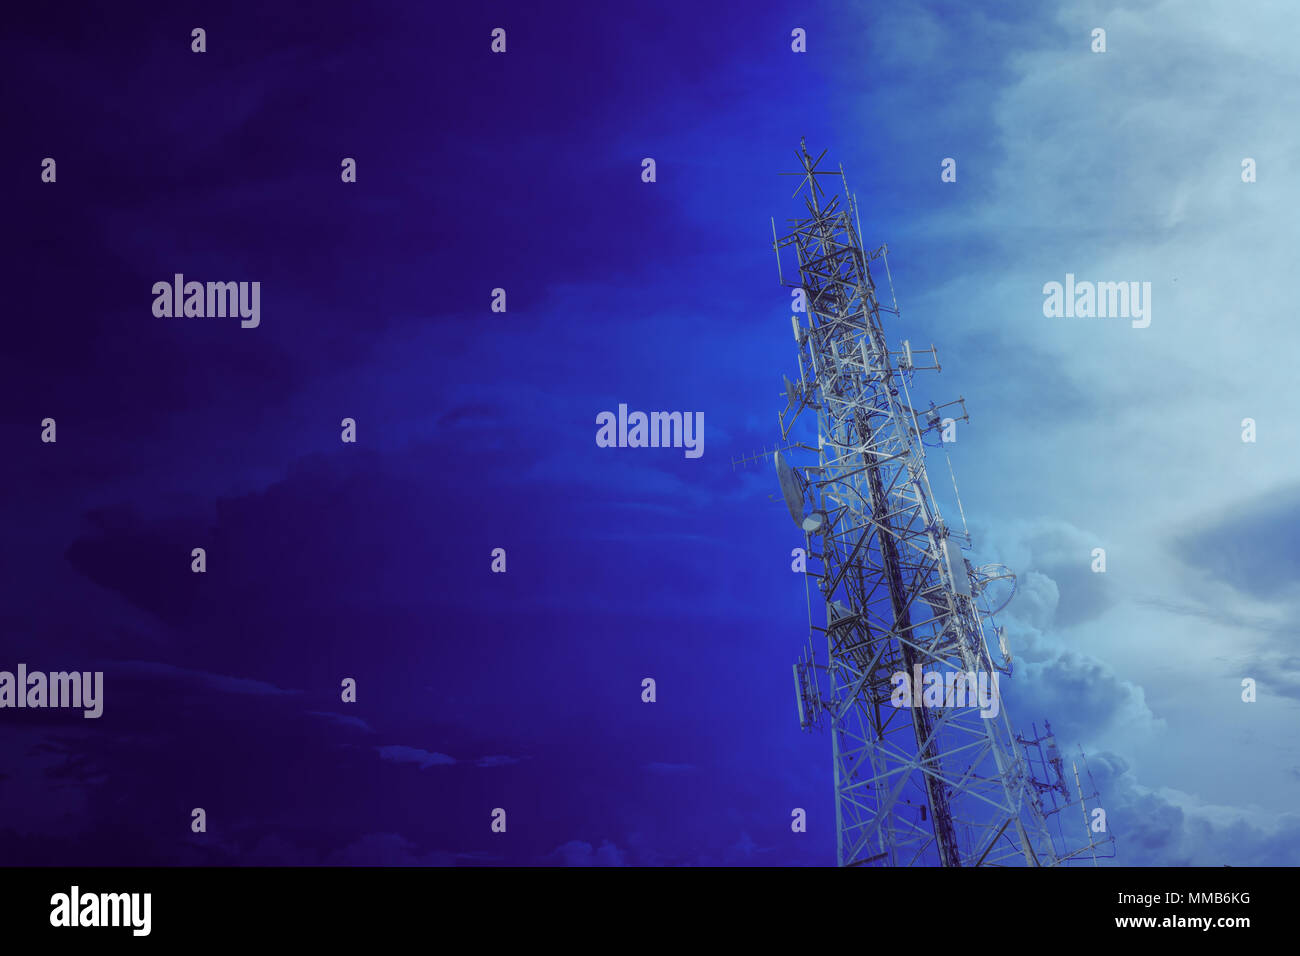 Communication tower, haute puissance antenne wifi hotspot après le transport des données numériques à long terme Banque D'Images